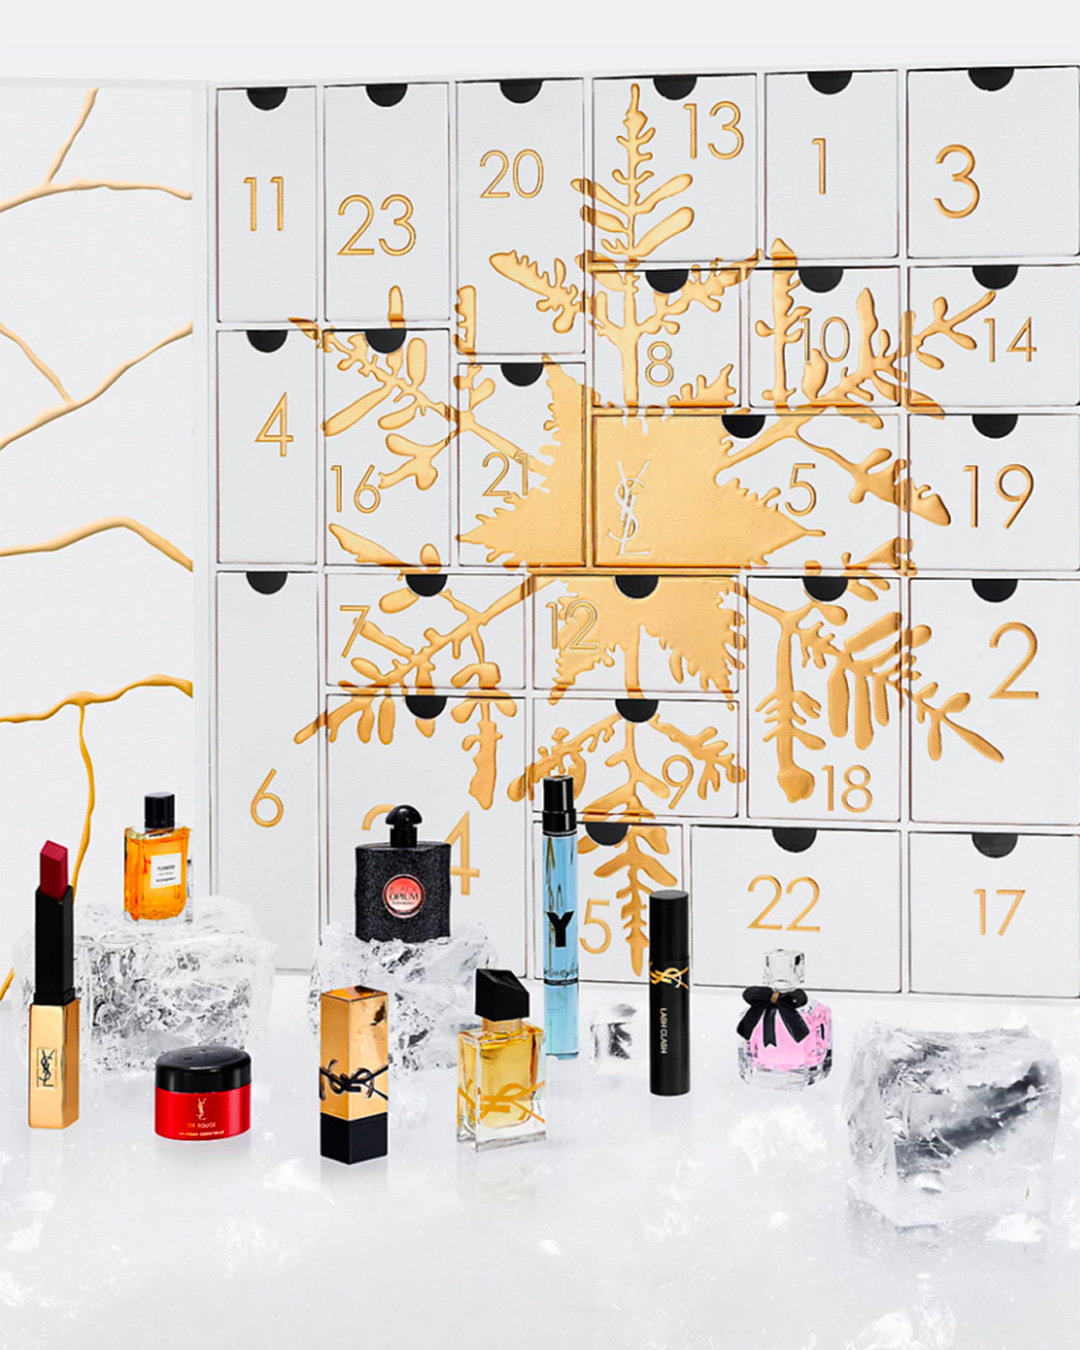 The Yves Saint Laurent Advent Calendar. 